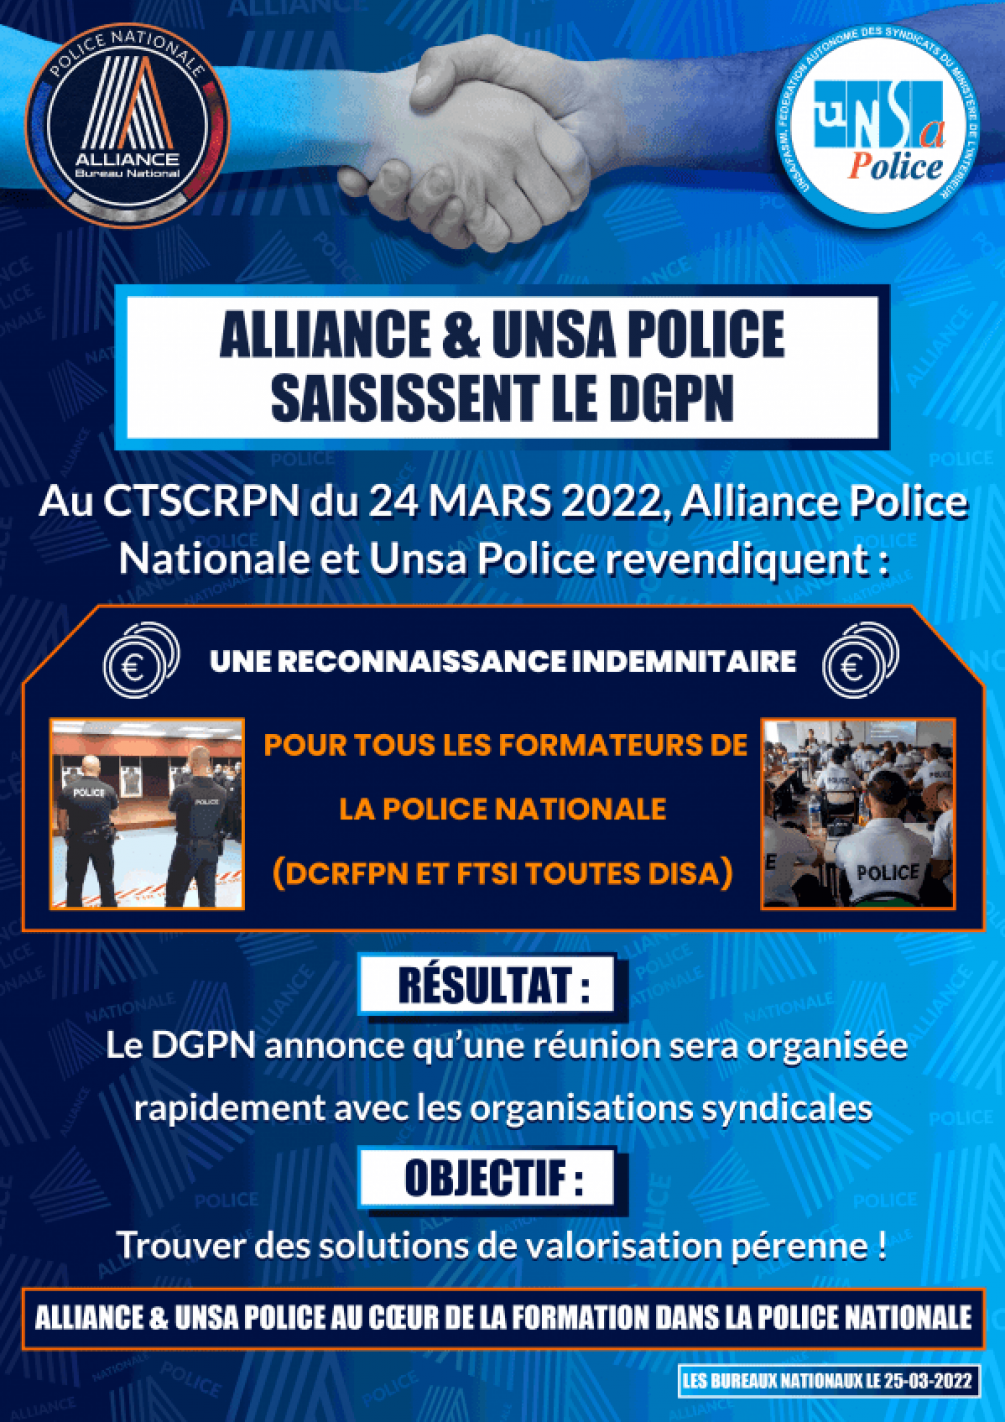 ALLIANCE & UNSA POLICE SAISISSENT LE DGPN